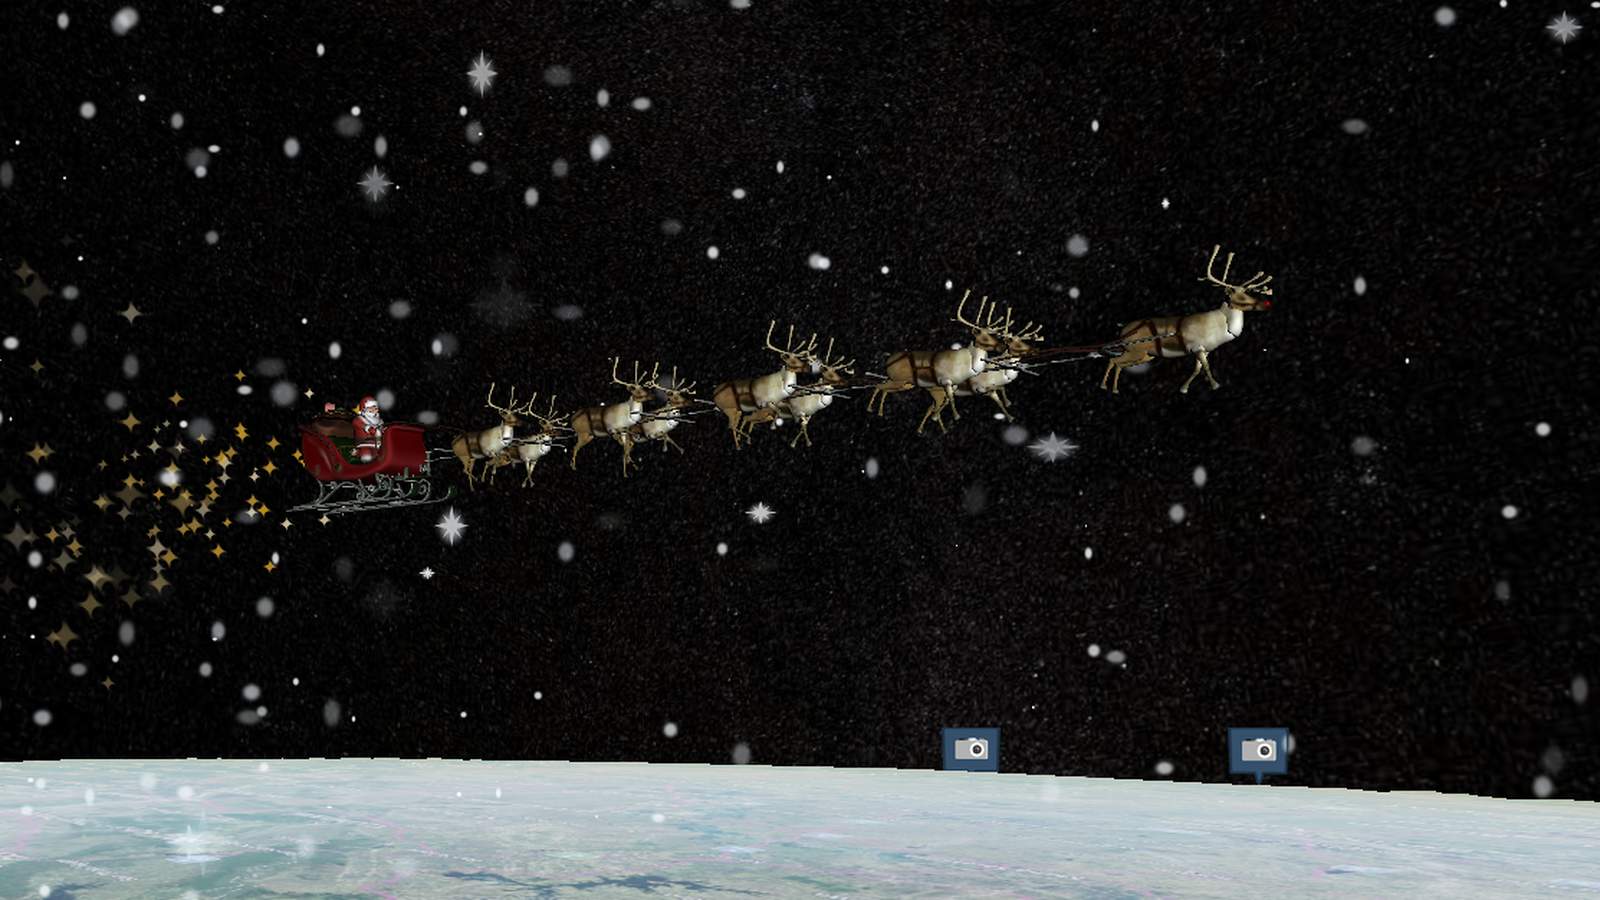 LIVE STREAM: Follow Santa’s journey across the globe with NORAD’s Santa tracker